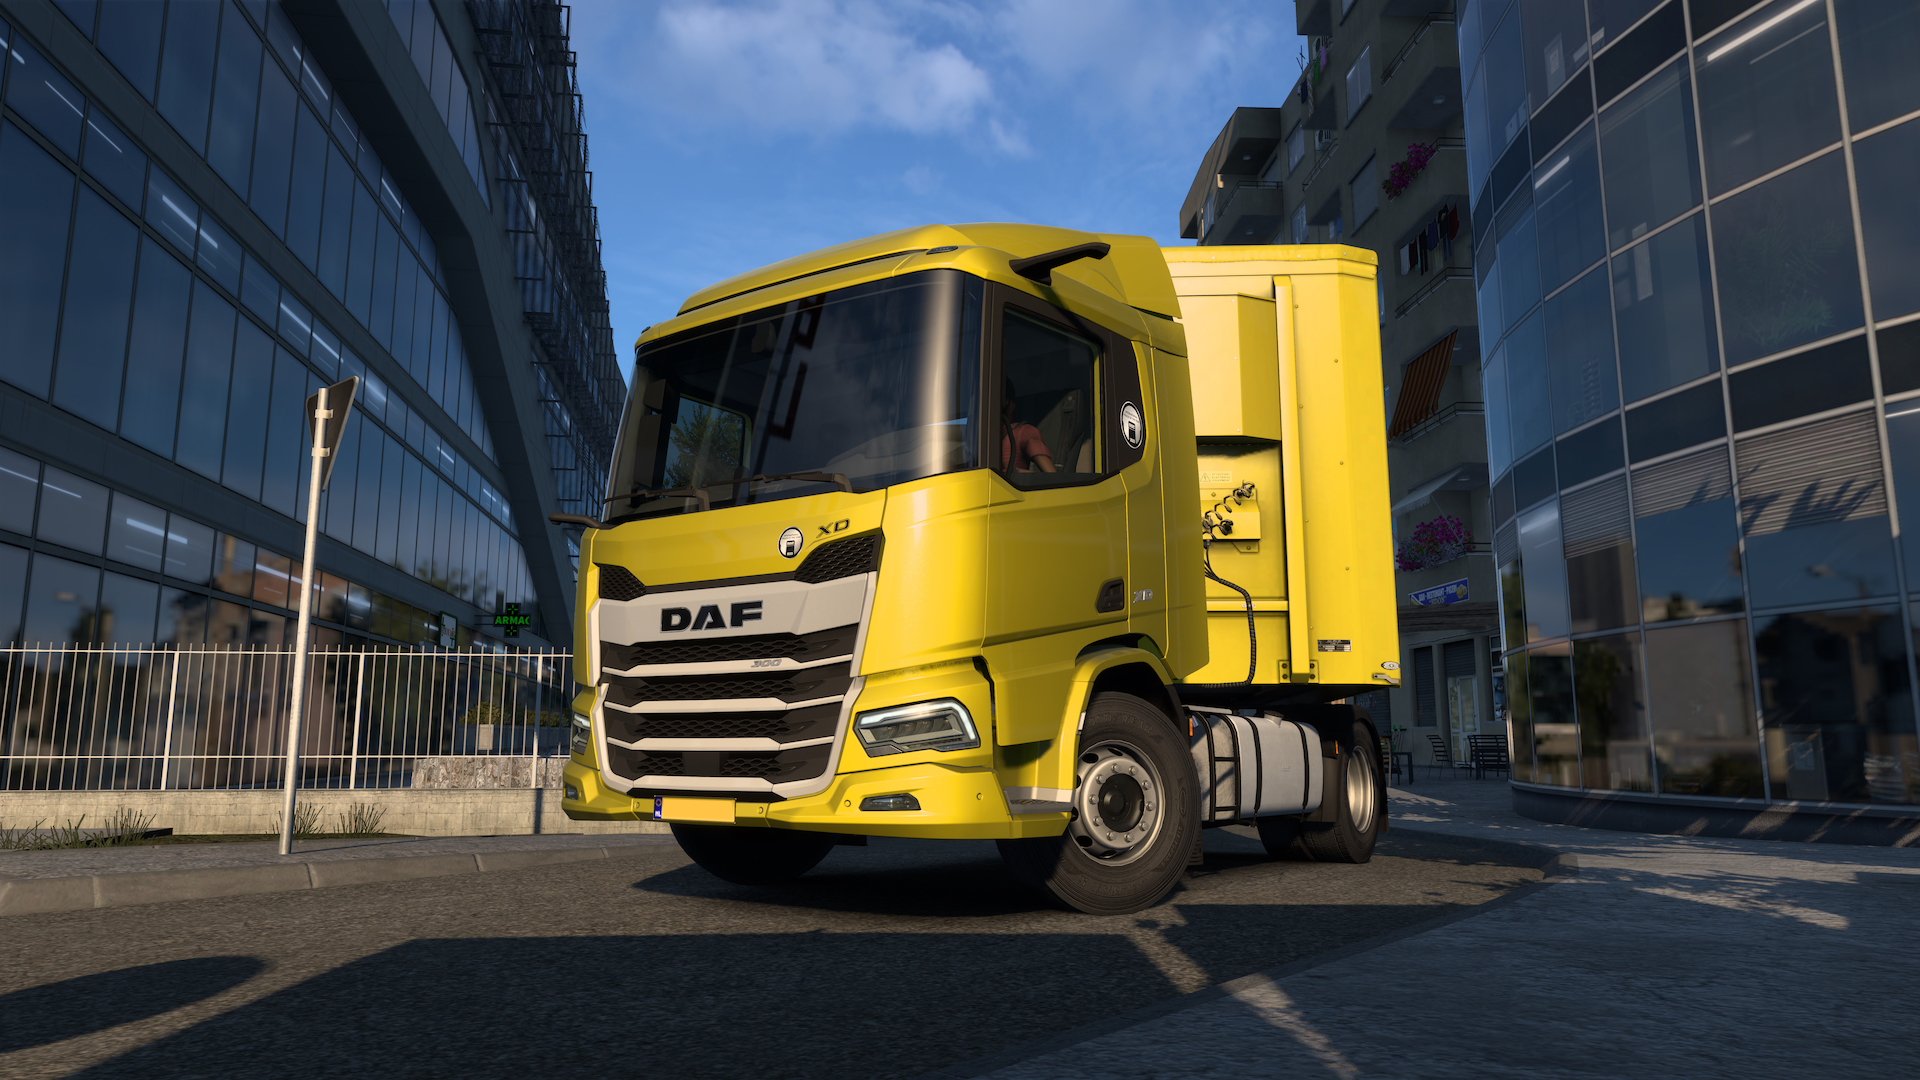 Nya generationens lastbil av typen DAF XD är nu tillgänglig i ETS2. 